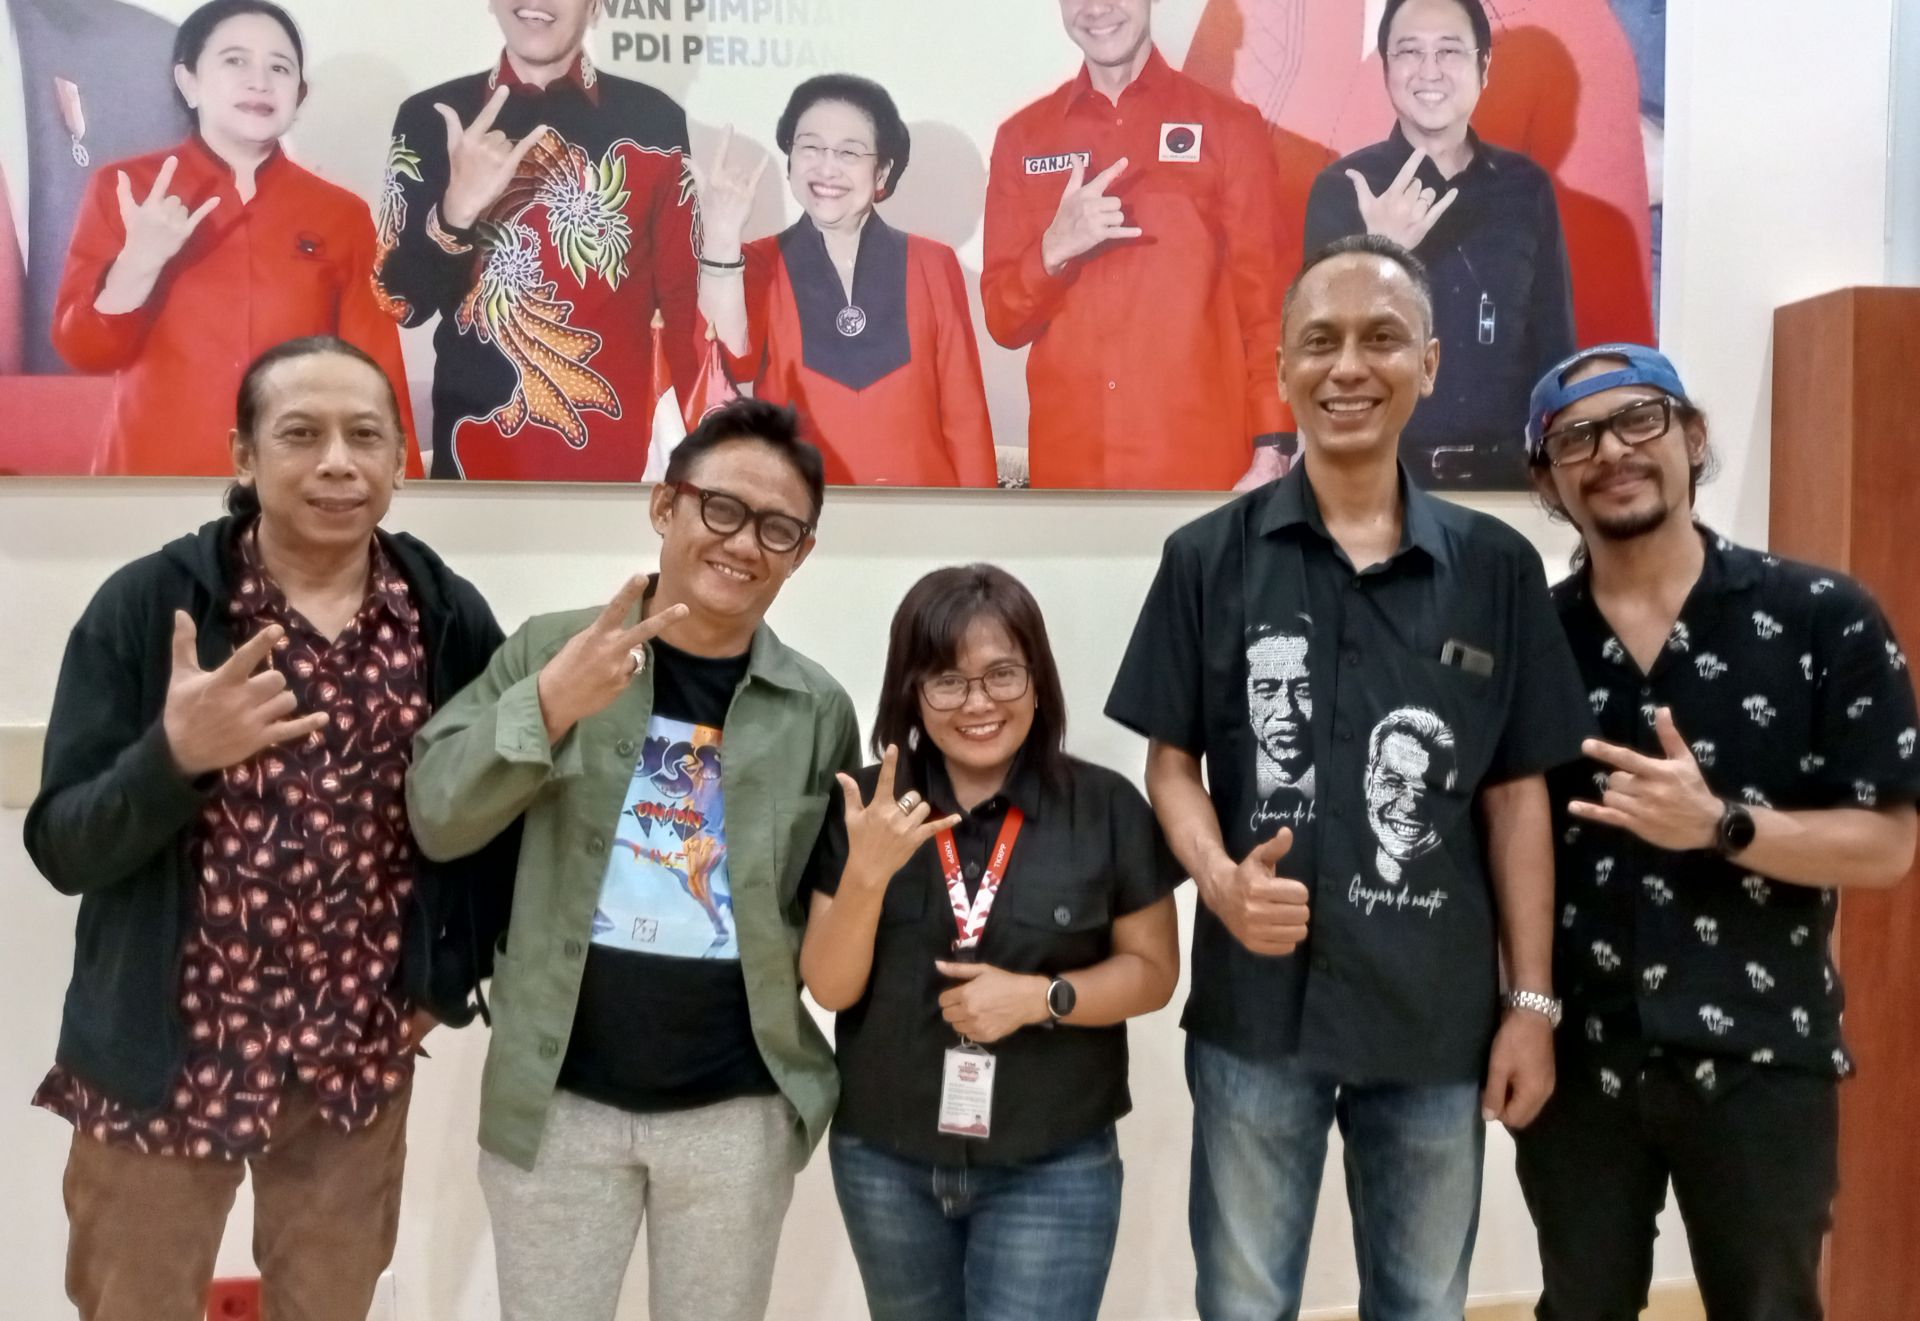 Gerak Cepat Indonesia Maju, Musisi Semangat dan Optimis dengan Gagasan Ganjar Pranowo